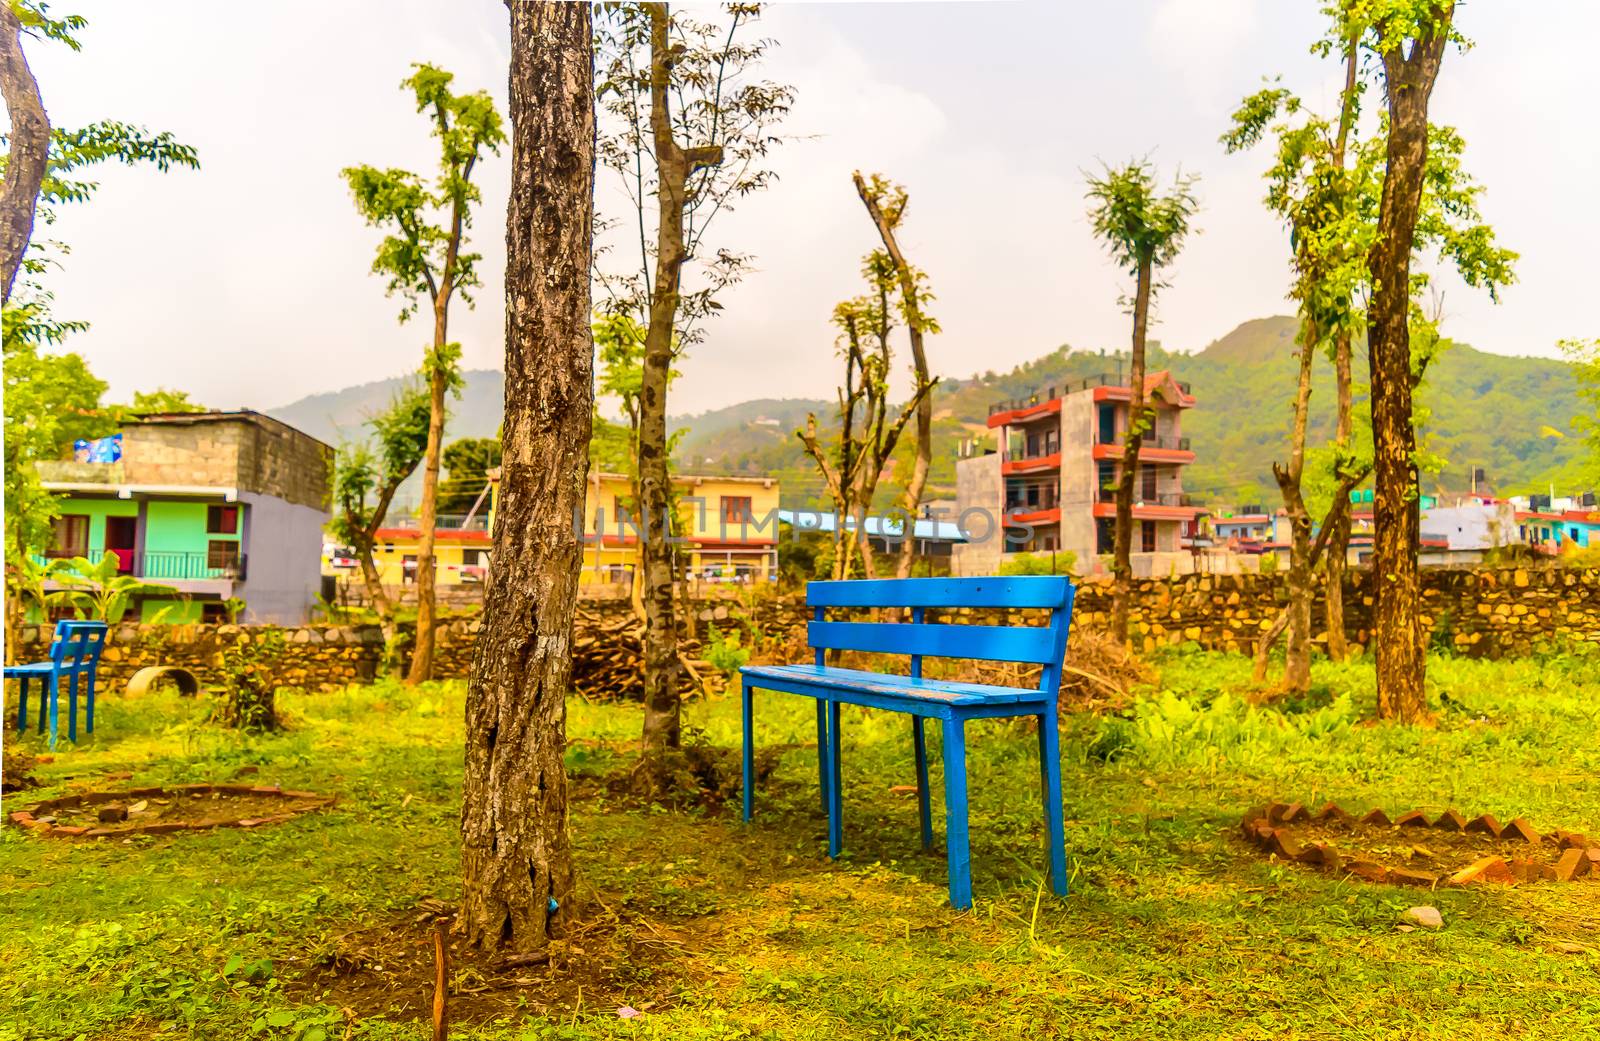 Idyllic mountain village bench and landscape, kathmandu nepal